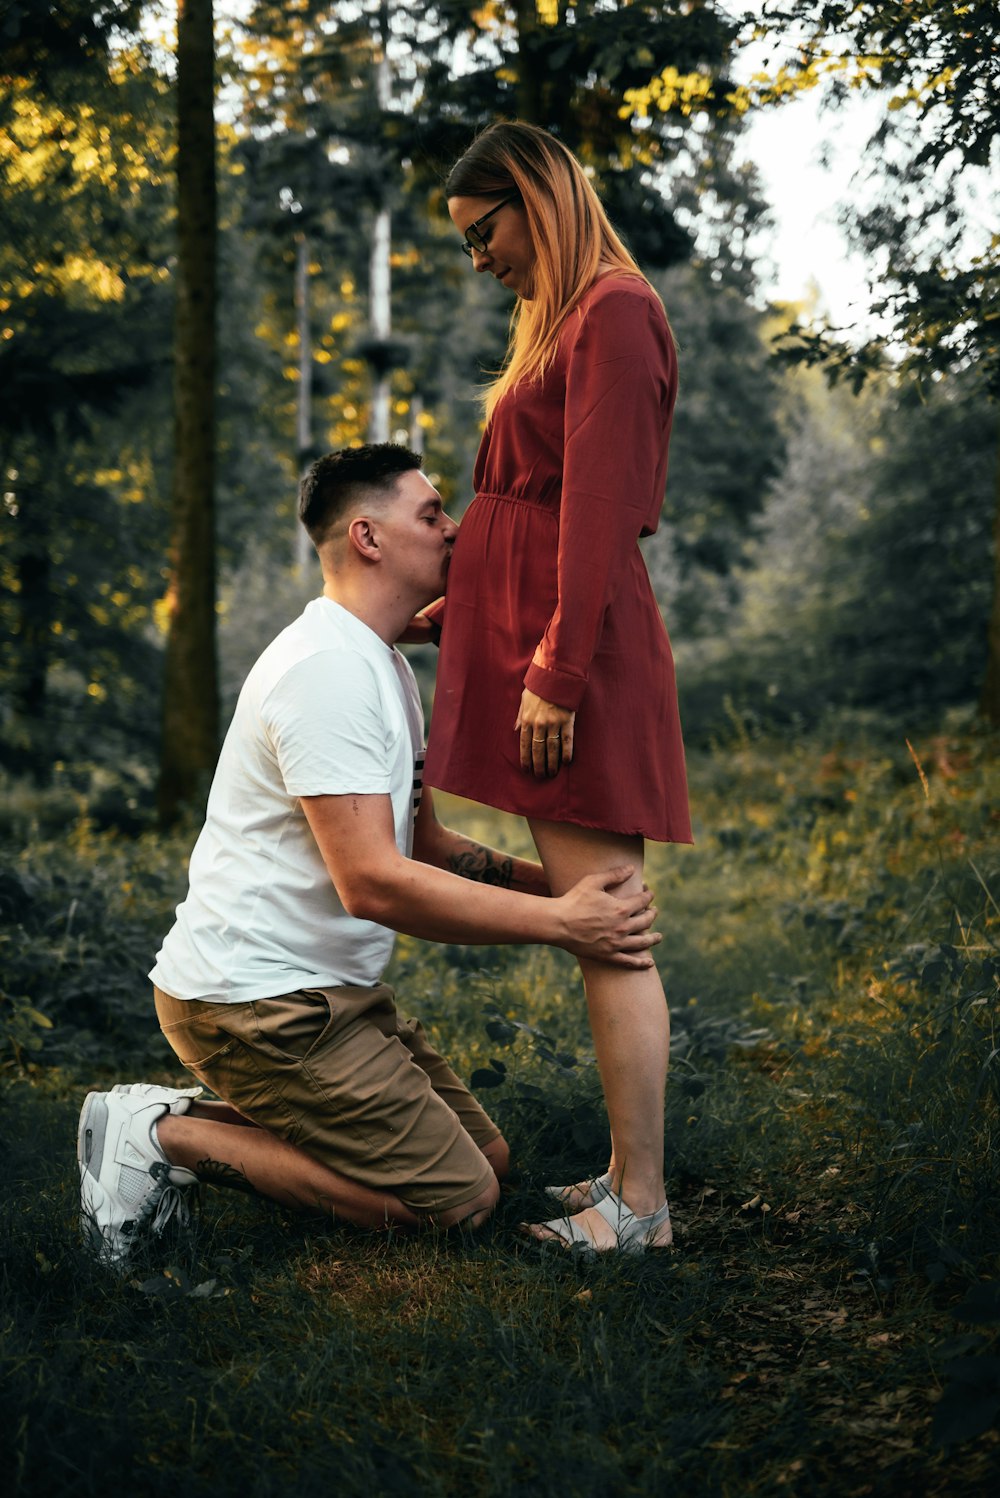 Un hombre y una mujer besándose